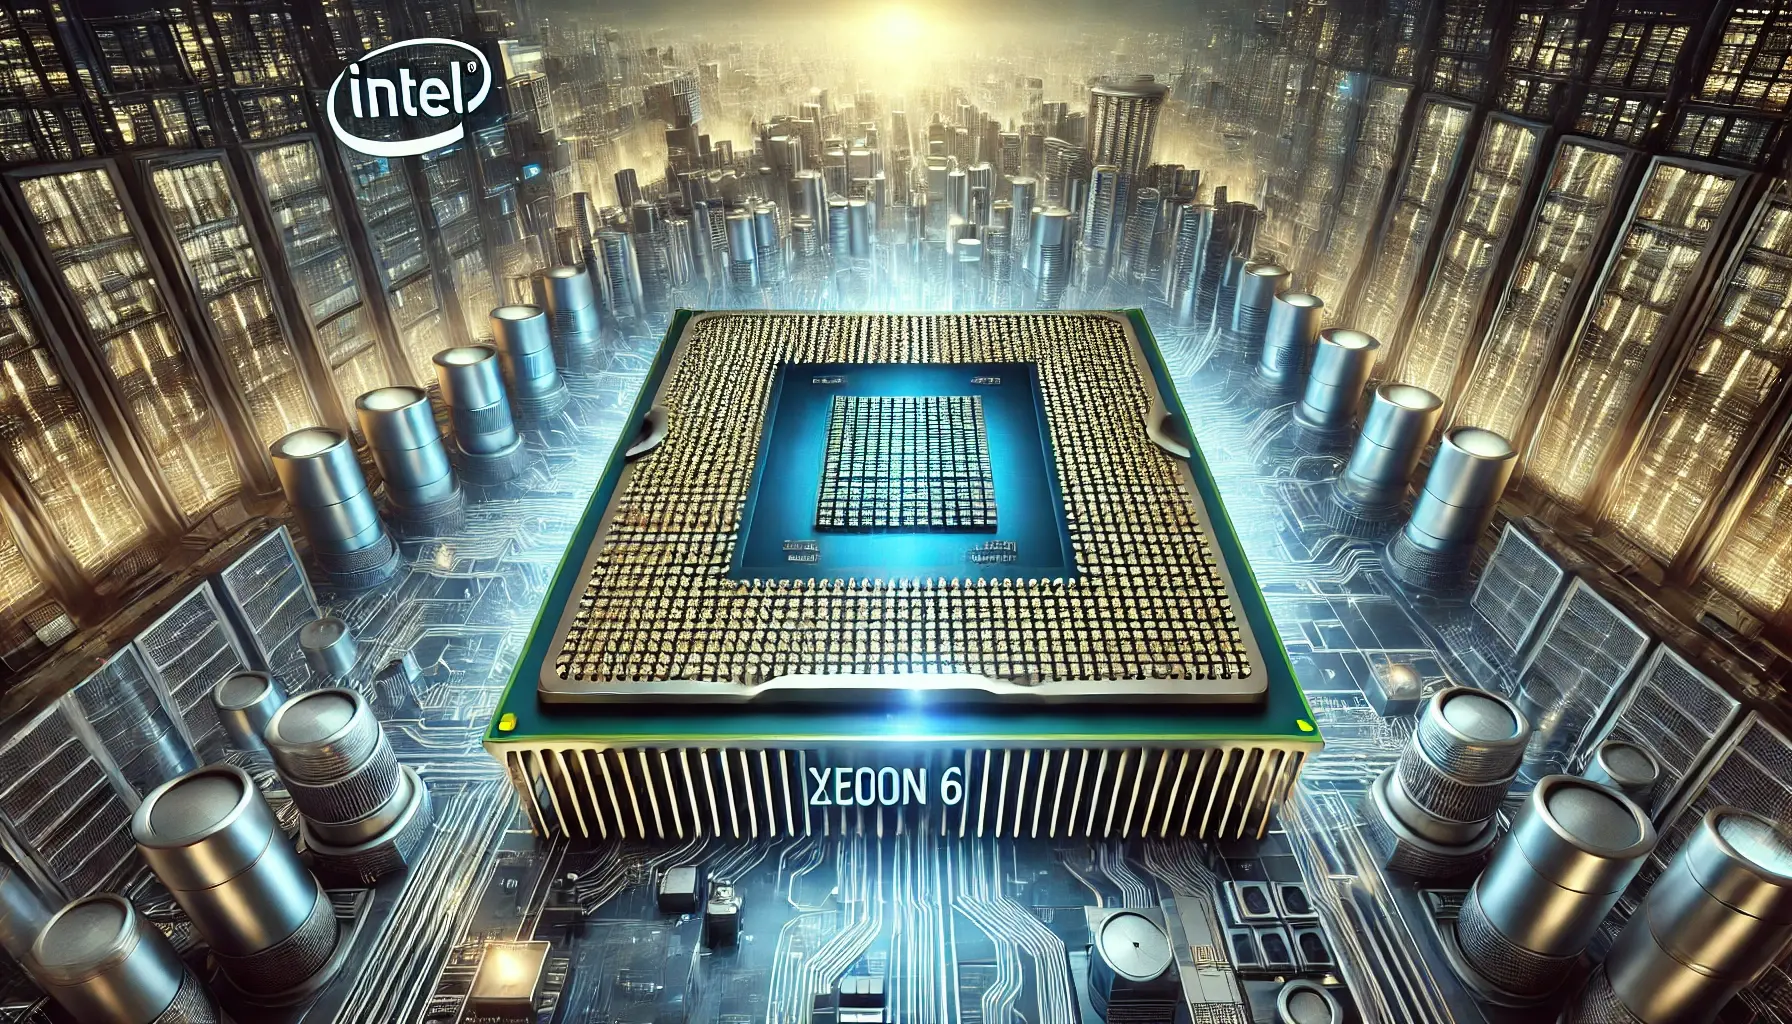 Intel apresenta novos Xeon 6 para data centers com 288 núcleos

A Intel, renomada fabricante de processadores, acaba de lançar os novos Intel Xeon 6, uma linha de processadores voltada para data centers que promete revolucionar o mercado de servidores com sua impressionante quantidade de núcleos. Com um total de 288 núcleos, os novos Intel Xeon 6 prometem oferecer um desempenho excepcional e uma capacidade de processamento sem precedentes.

Os detalhes dos novos processadores

Os novos Intel Xeon 6 são baseados na mais recente arquitetura da Intel e contam com uma série de recursos avançados que os tornam ideais para ambientes de data center que demandam alto desempenho e confiabilidade.